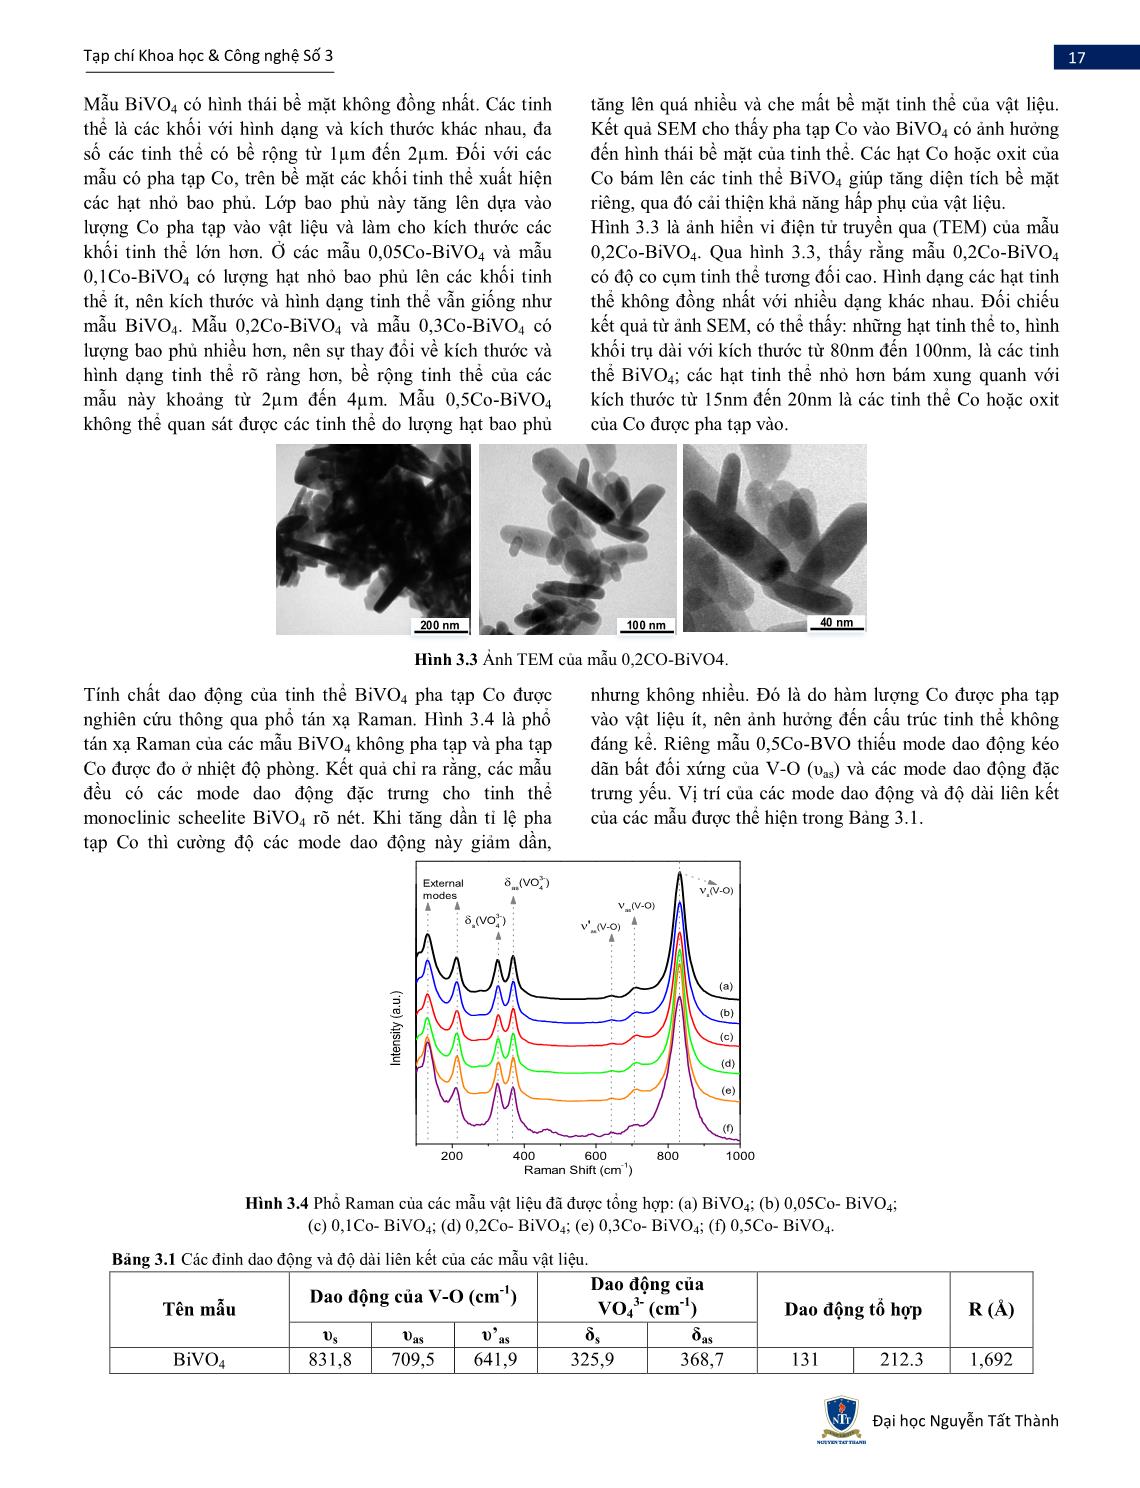 Nghiên cứu tổng hợp Co-BiVO4 bằng phương pháp thủy nhiệt và đánh giá khả năng quang xúc tác sử dụng ánh sáng nhìn thấy trang 4